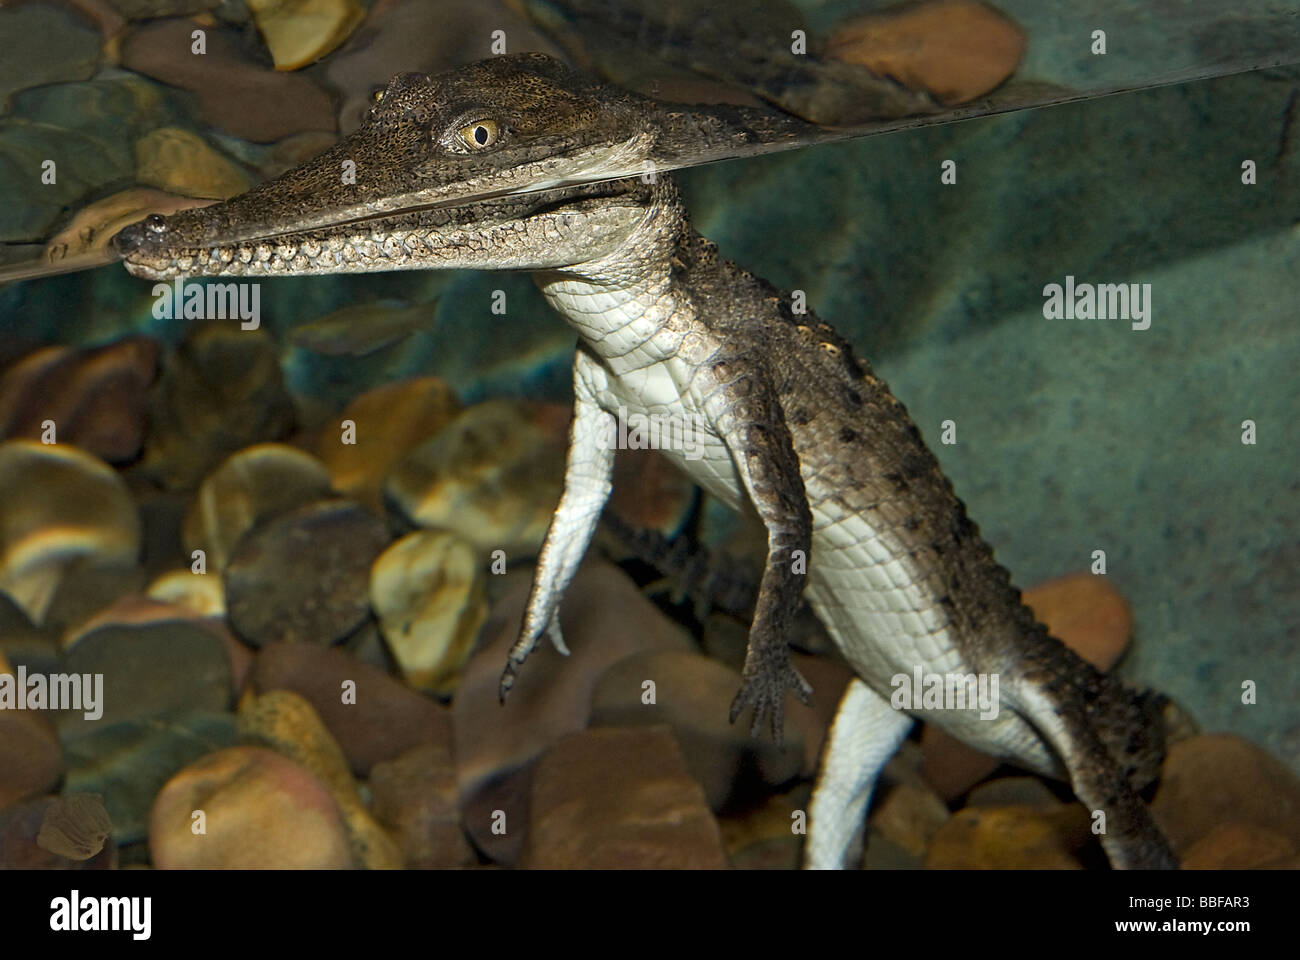 Tortues crocodiliens briser la surface de l'eau en montrant comment la plus grande partie de l'organisme se trouve submergé Banque D'Images